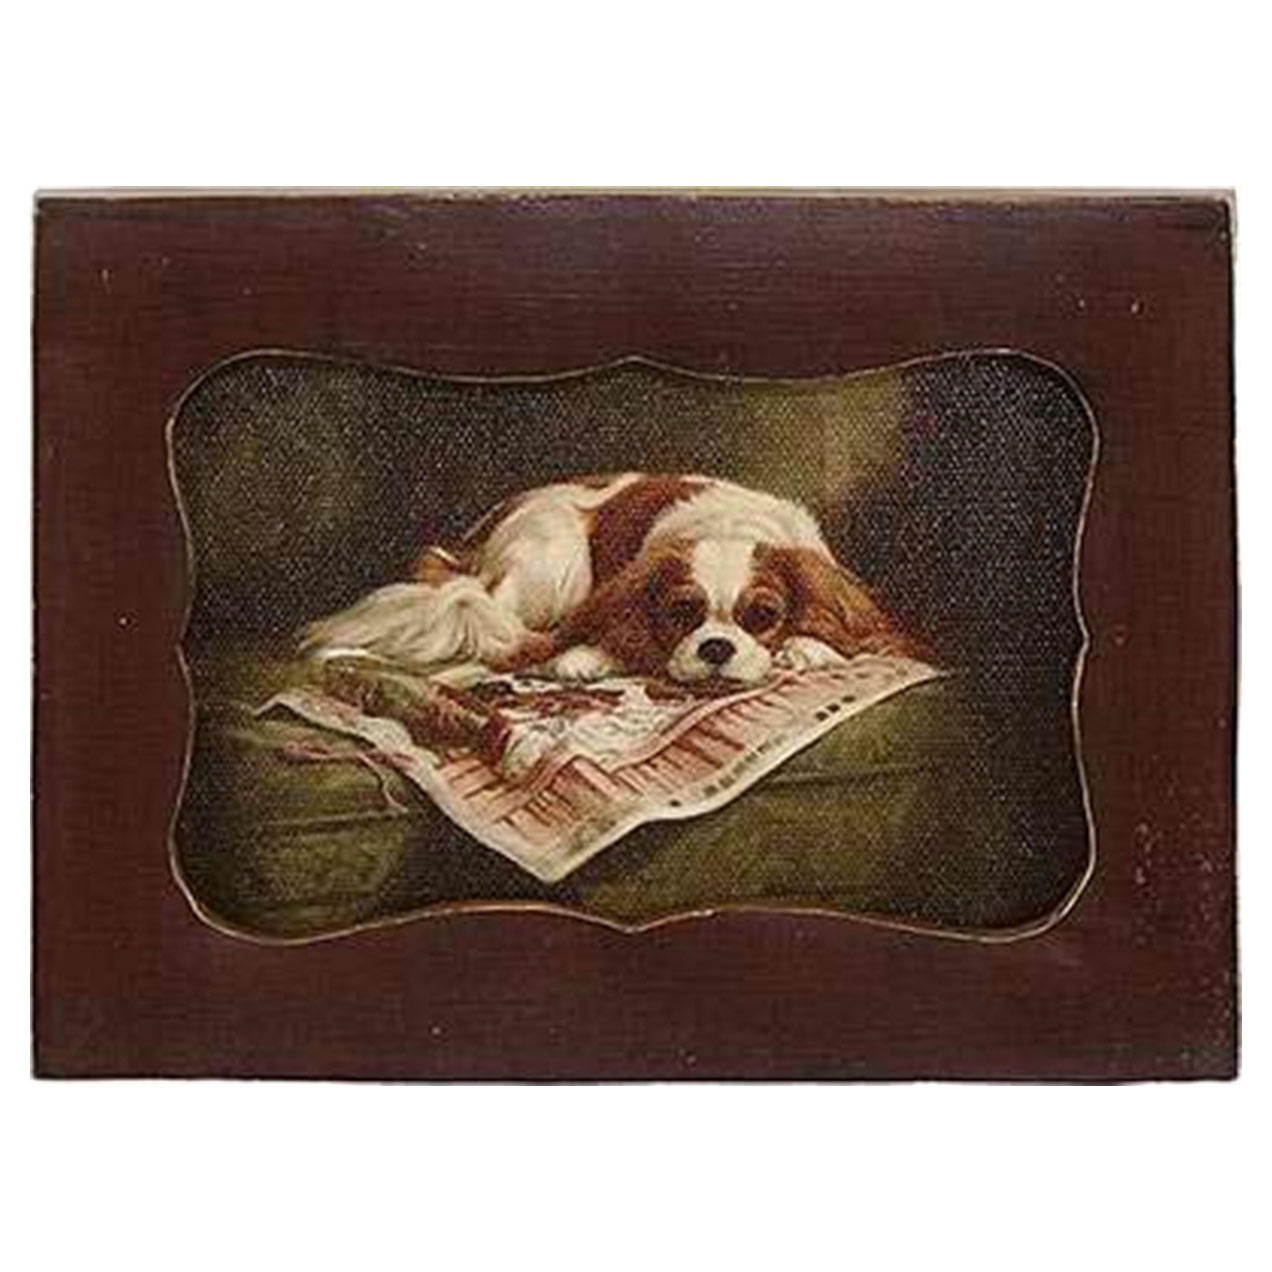 Картина в прямоугольной раме Glasar, спящая собака, масло, 10x2x12 см картина в раме glasar масло 10x2x13см